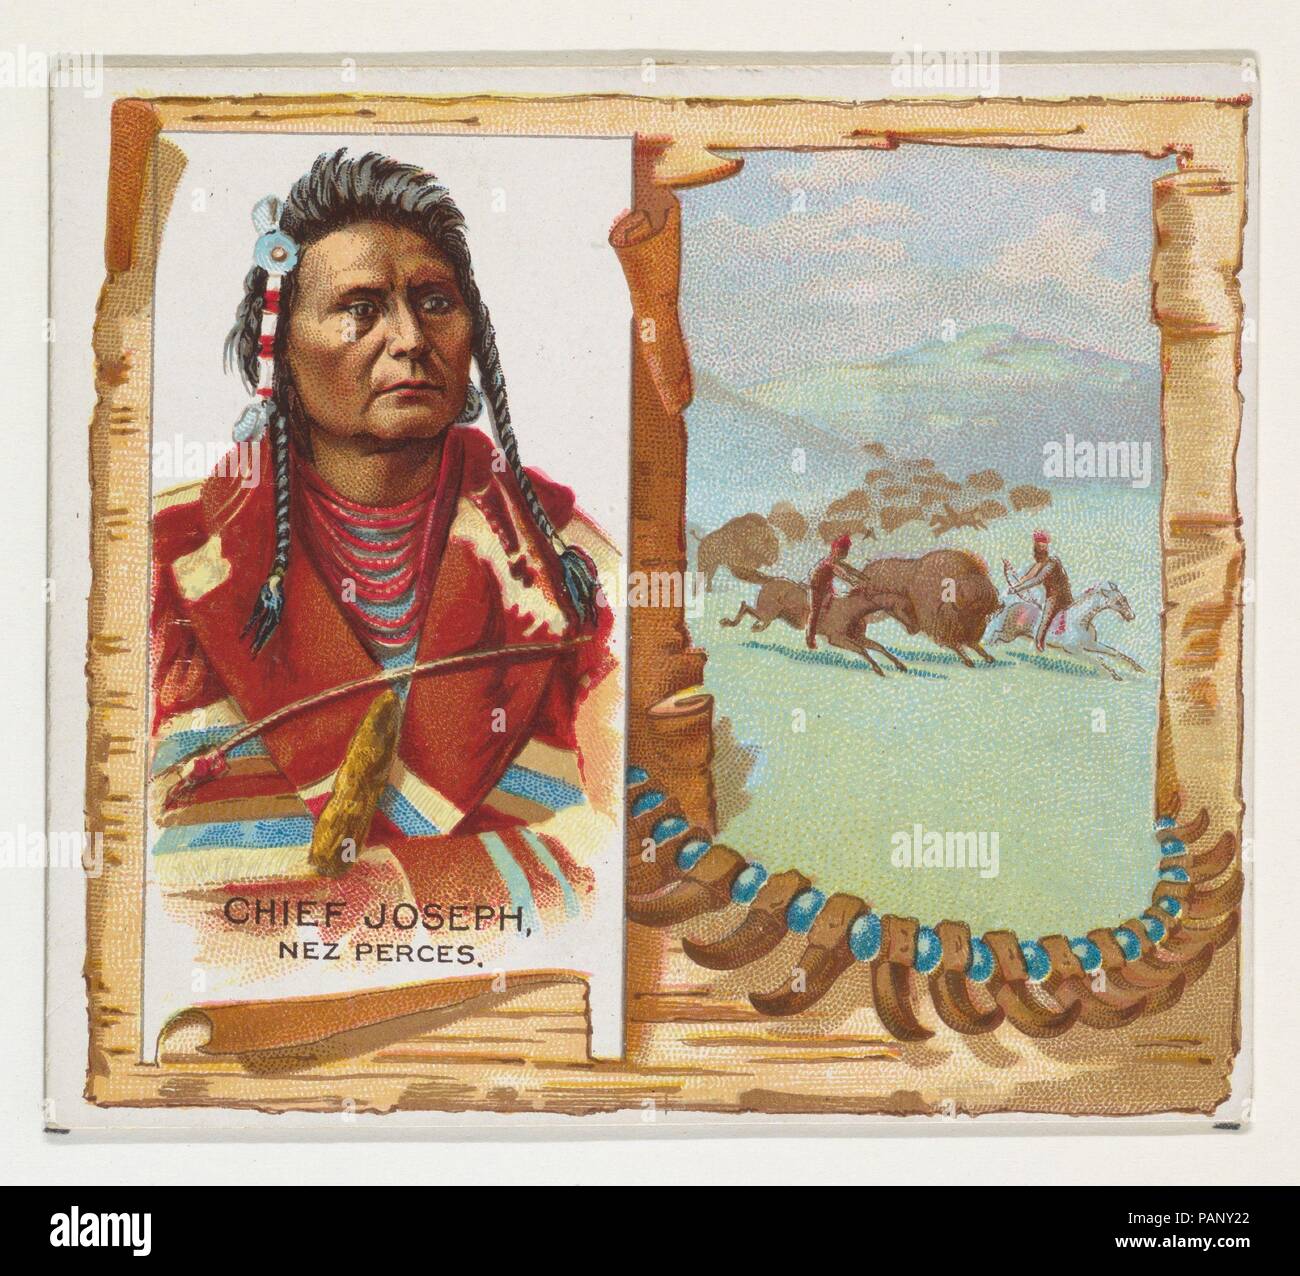 Le chef Joseph, Nez Perces, de l'American Indian Chiefs series (N36) pour Allen & Ginter Cigarettes. Fiche Technique : Dimensions : 2 7/8 x 3 1/4 in. (7,3 x 8,3 cm). Editeur : Publié par Allen & Ginter (Américain, Richmond, Virginie). Date : 1888. Les cartes commerciales de l 'American Indian Chiefs" (N36), publié en 1888 dans un jeu de 50 cartes pour promouvoir Allen & Ginter cigarettes d'une marque. Série N36 reproduit les cartes de N2 dans une plus grande taille. Musée : Metropolitan Museum of Art, New York, USA. Banque D'Images